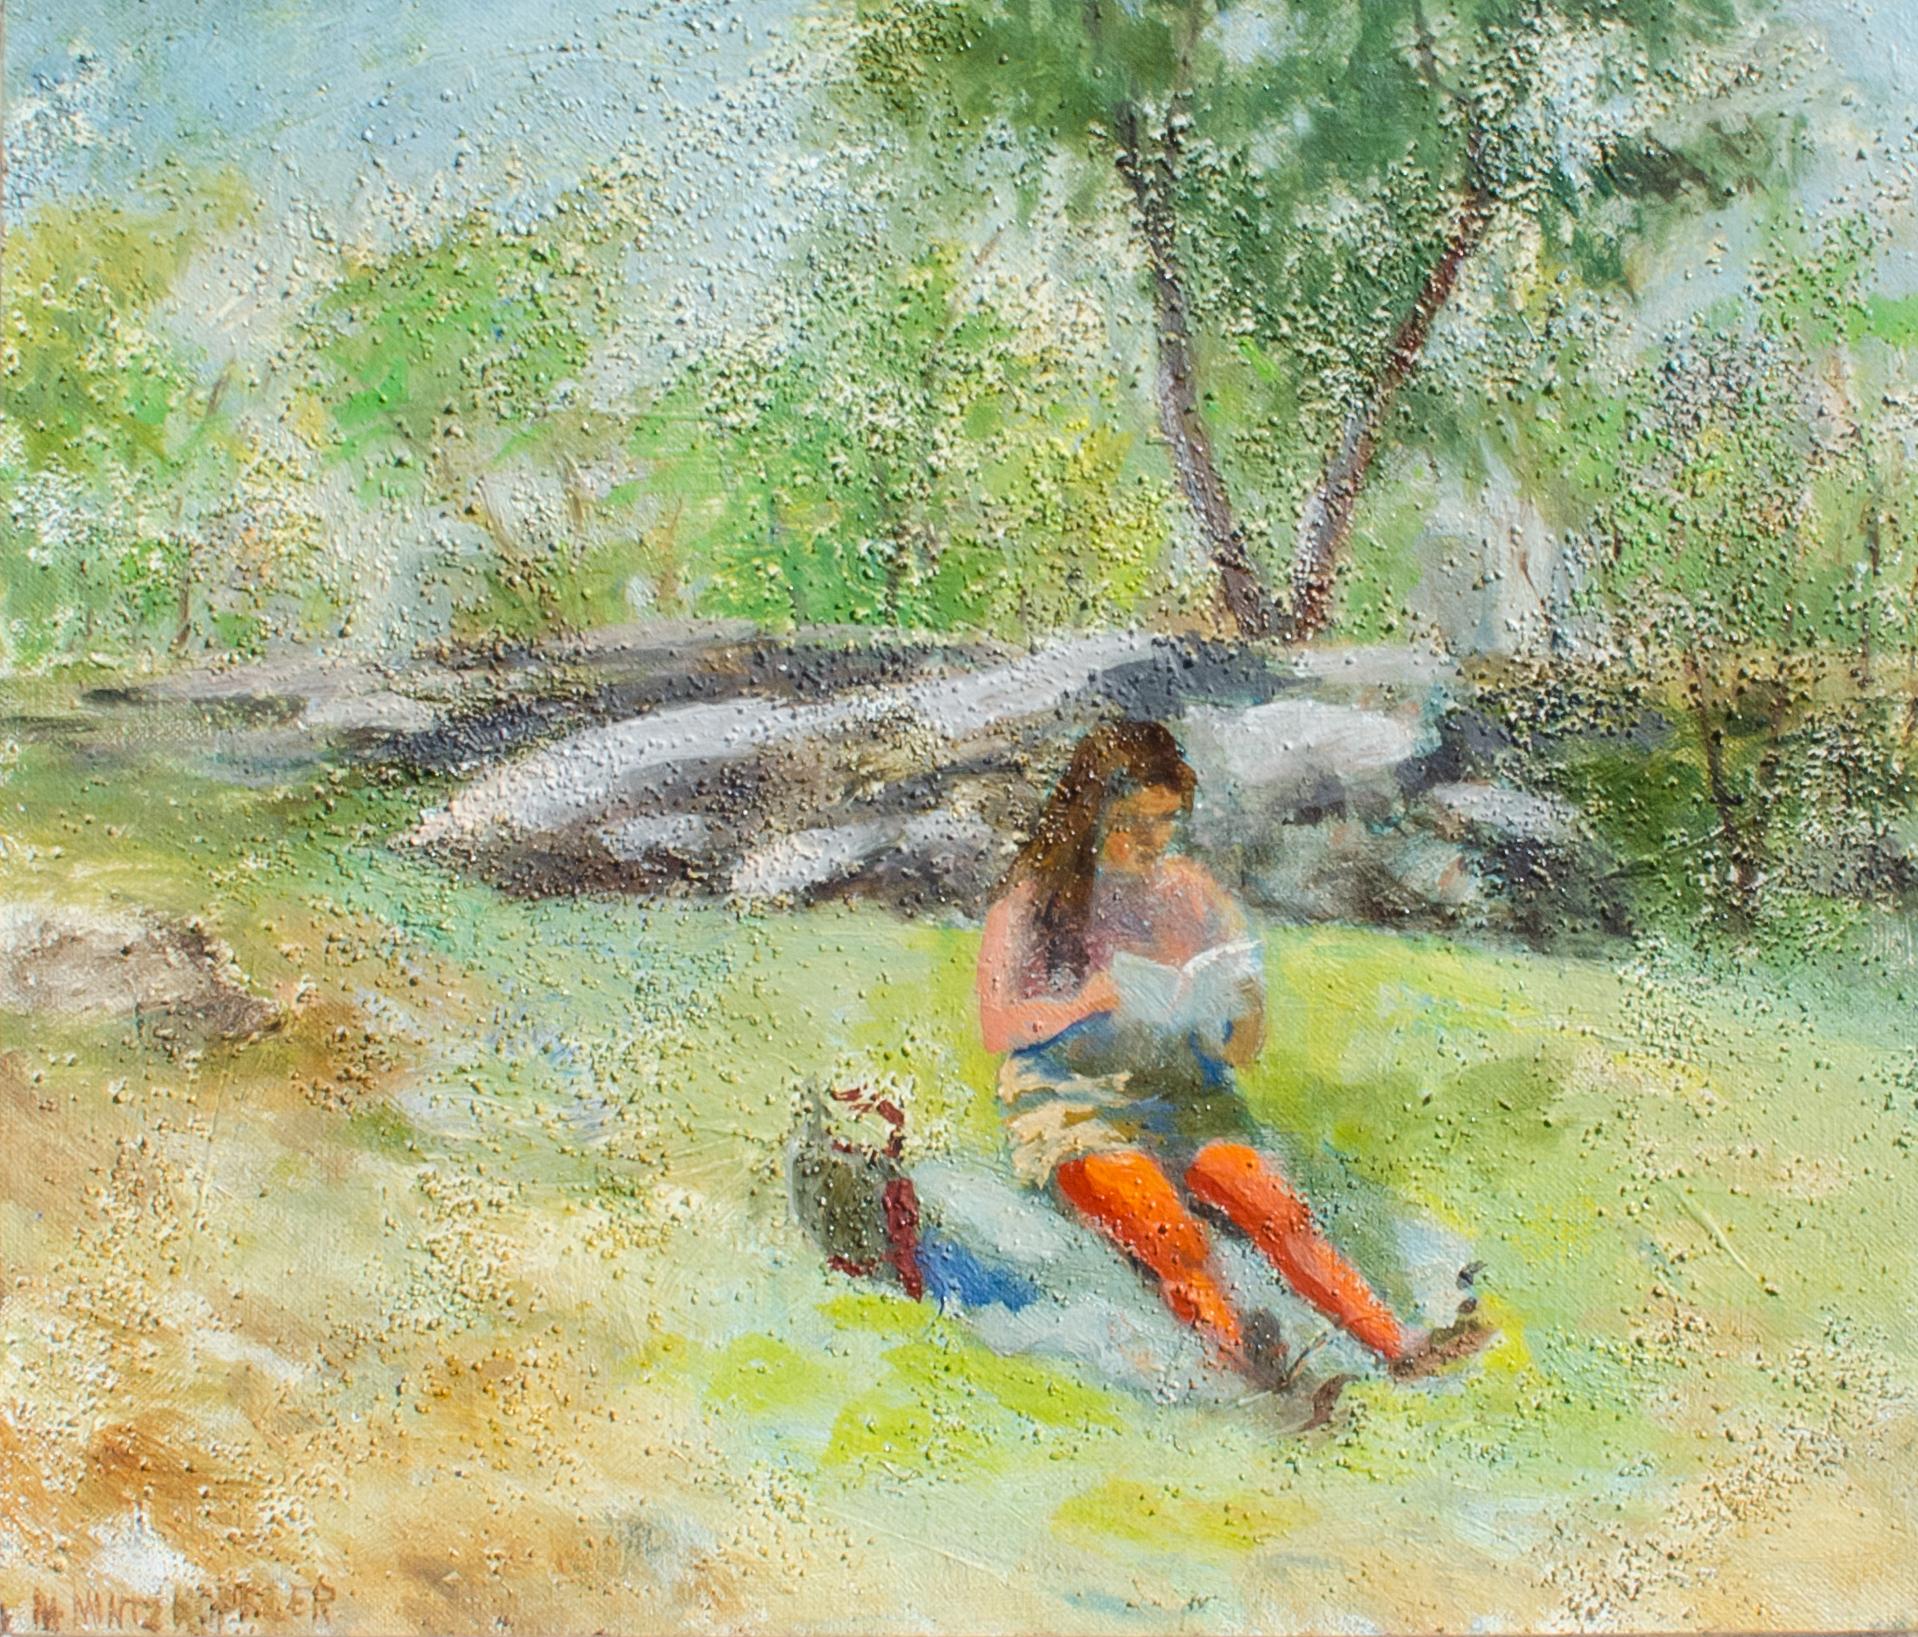 Mary Mintz Koffler (américaine, 1906-1985)
Midi à Central Park, C.C. 1950
Huile sur toile
12 1/2 x 14 1/4 in.
Encadré : 18 x 20 in.
Signé en bas à gauche
Inscrit au verso

Mary Mintz Koffler était une peintre américaine (New York, New Jersey)